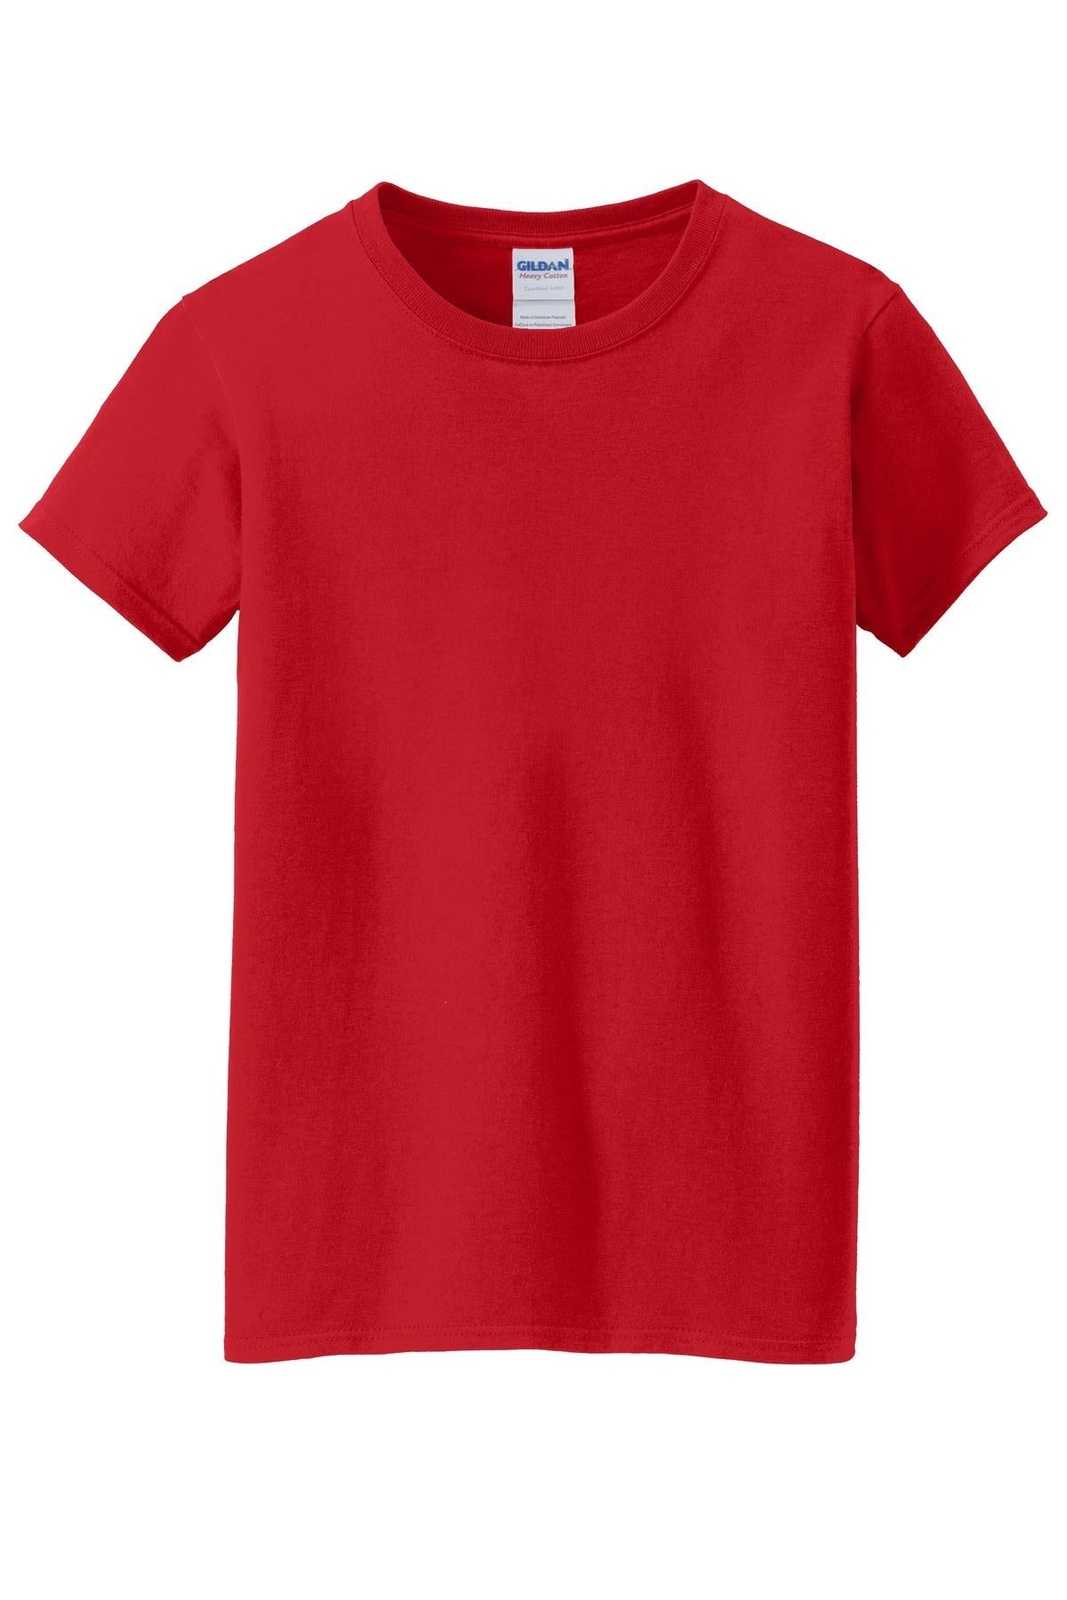 Gildan 5000L Ladies Heavy Cotton 100% Cotton T-Shirt - Red - HIT a Double